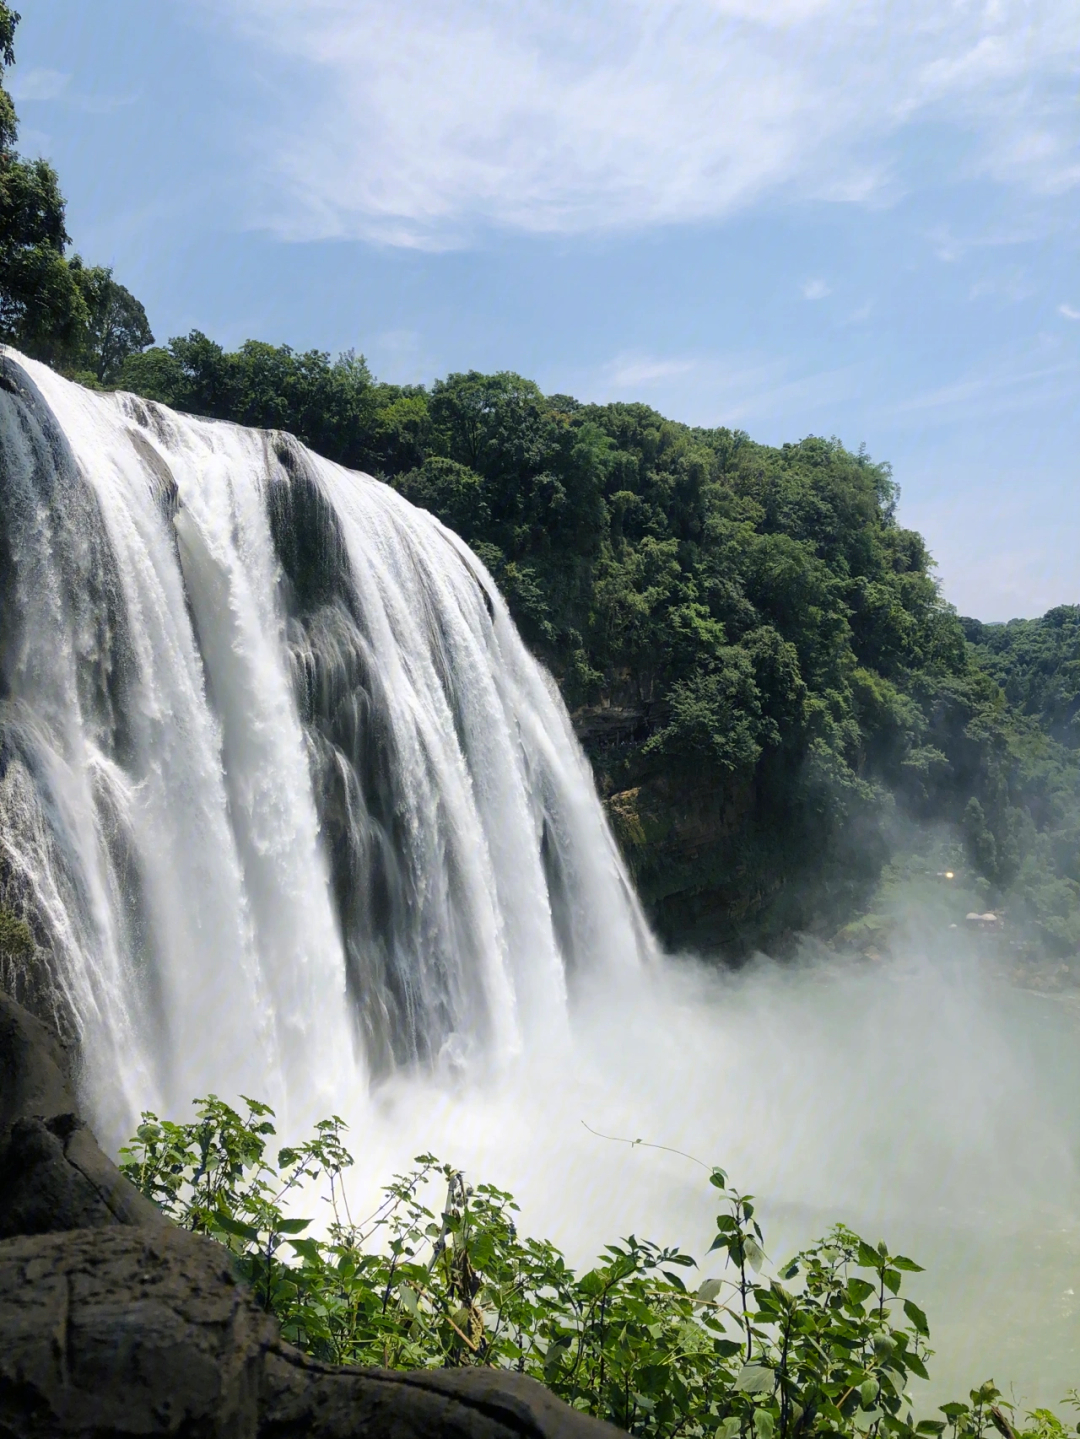 93 黄果树瀑布,亚洲第一大瀑布,耳熟能详不用介绍